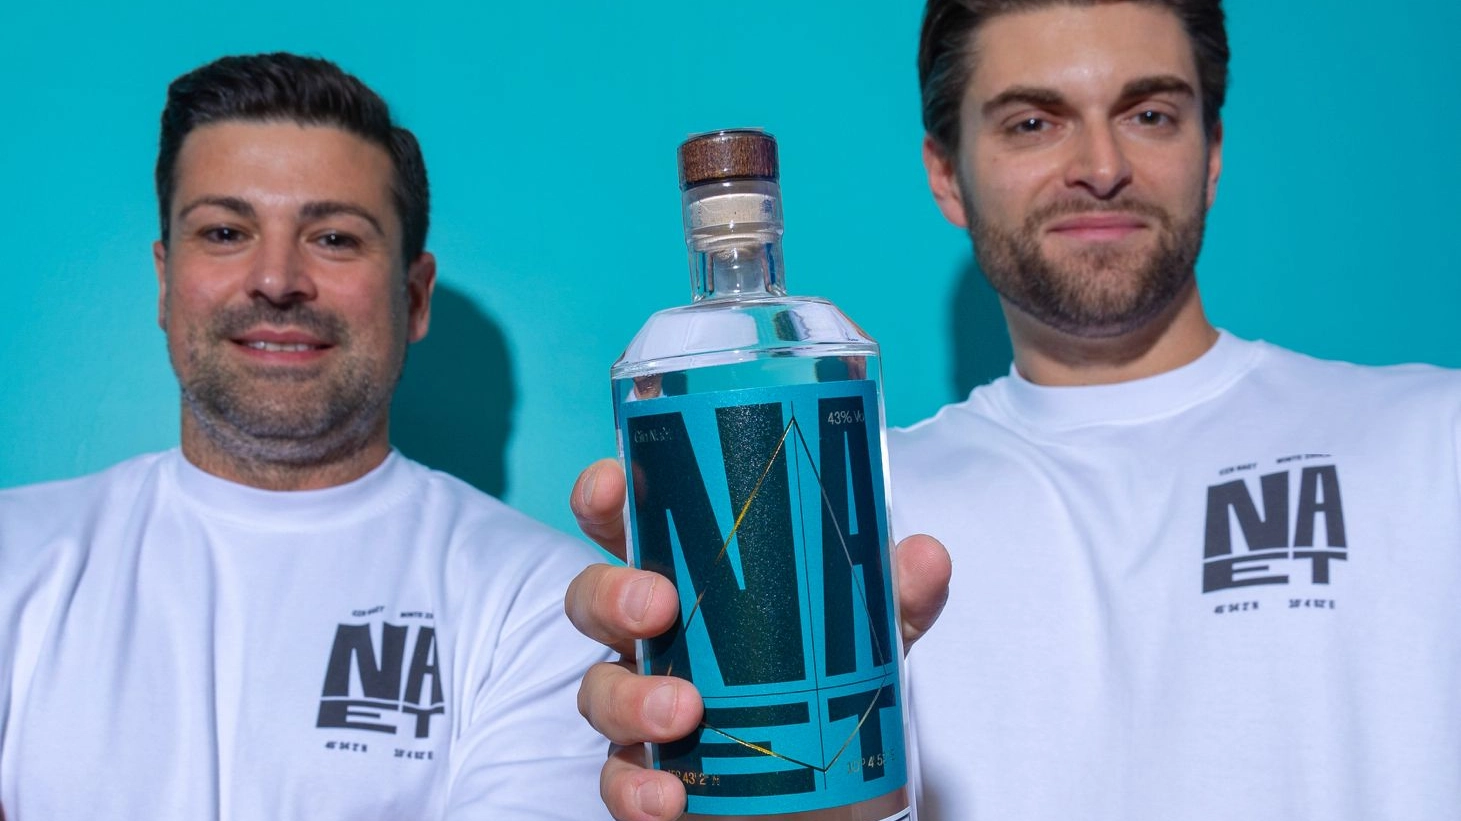 Stefano Gesa e Danilo Serioli lanciano il prodotto dallo ‘spirito’ isolano: “Dal nome, alla bottiglia fino alla scritta, tutto parla di noi”